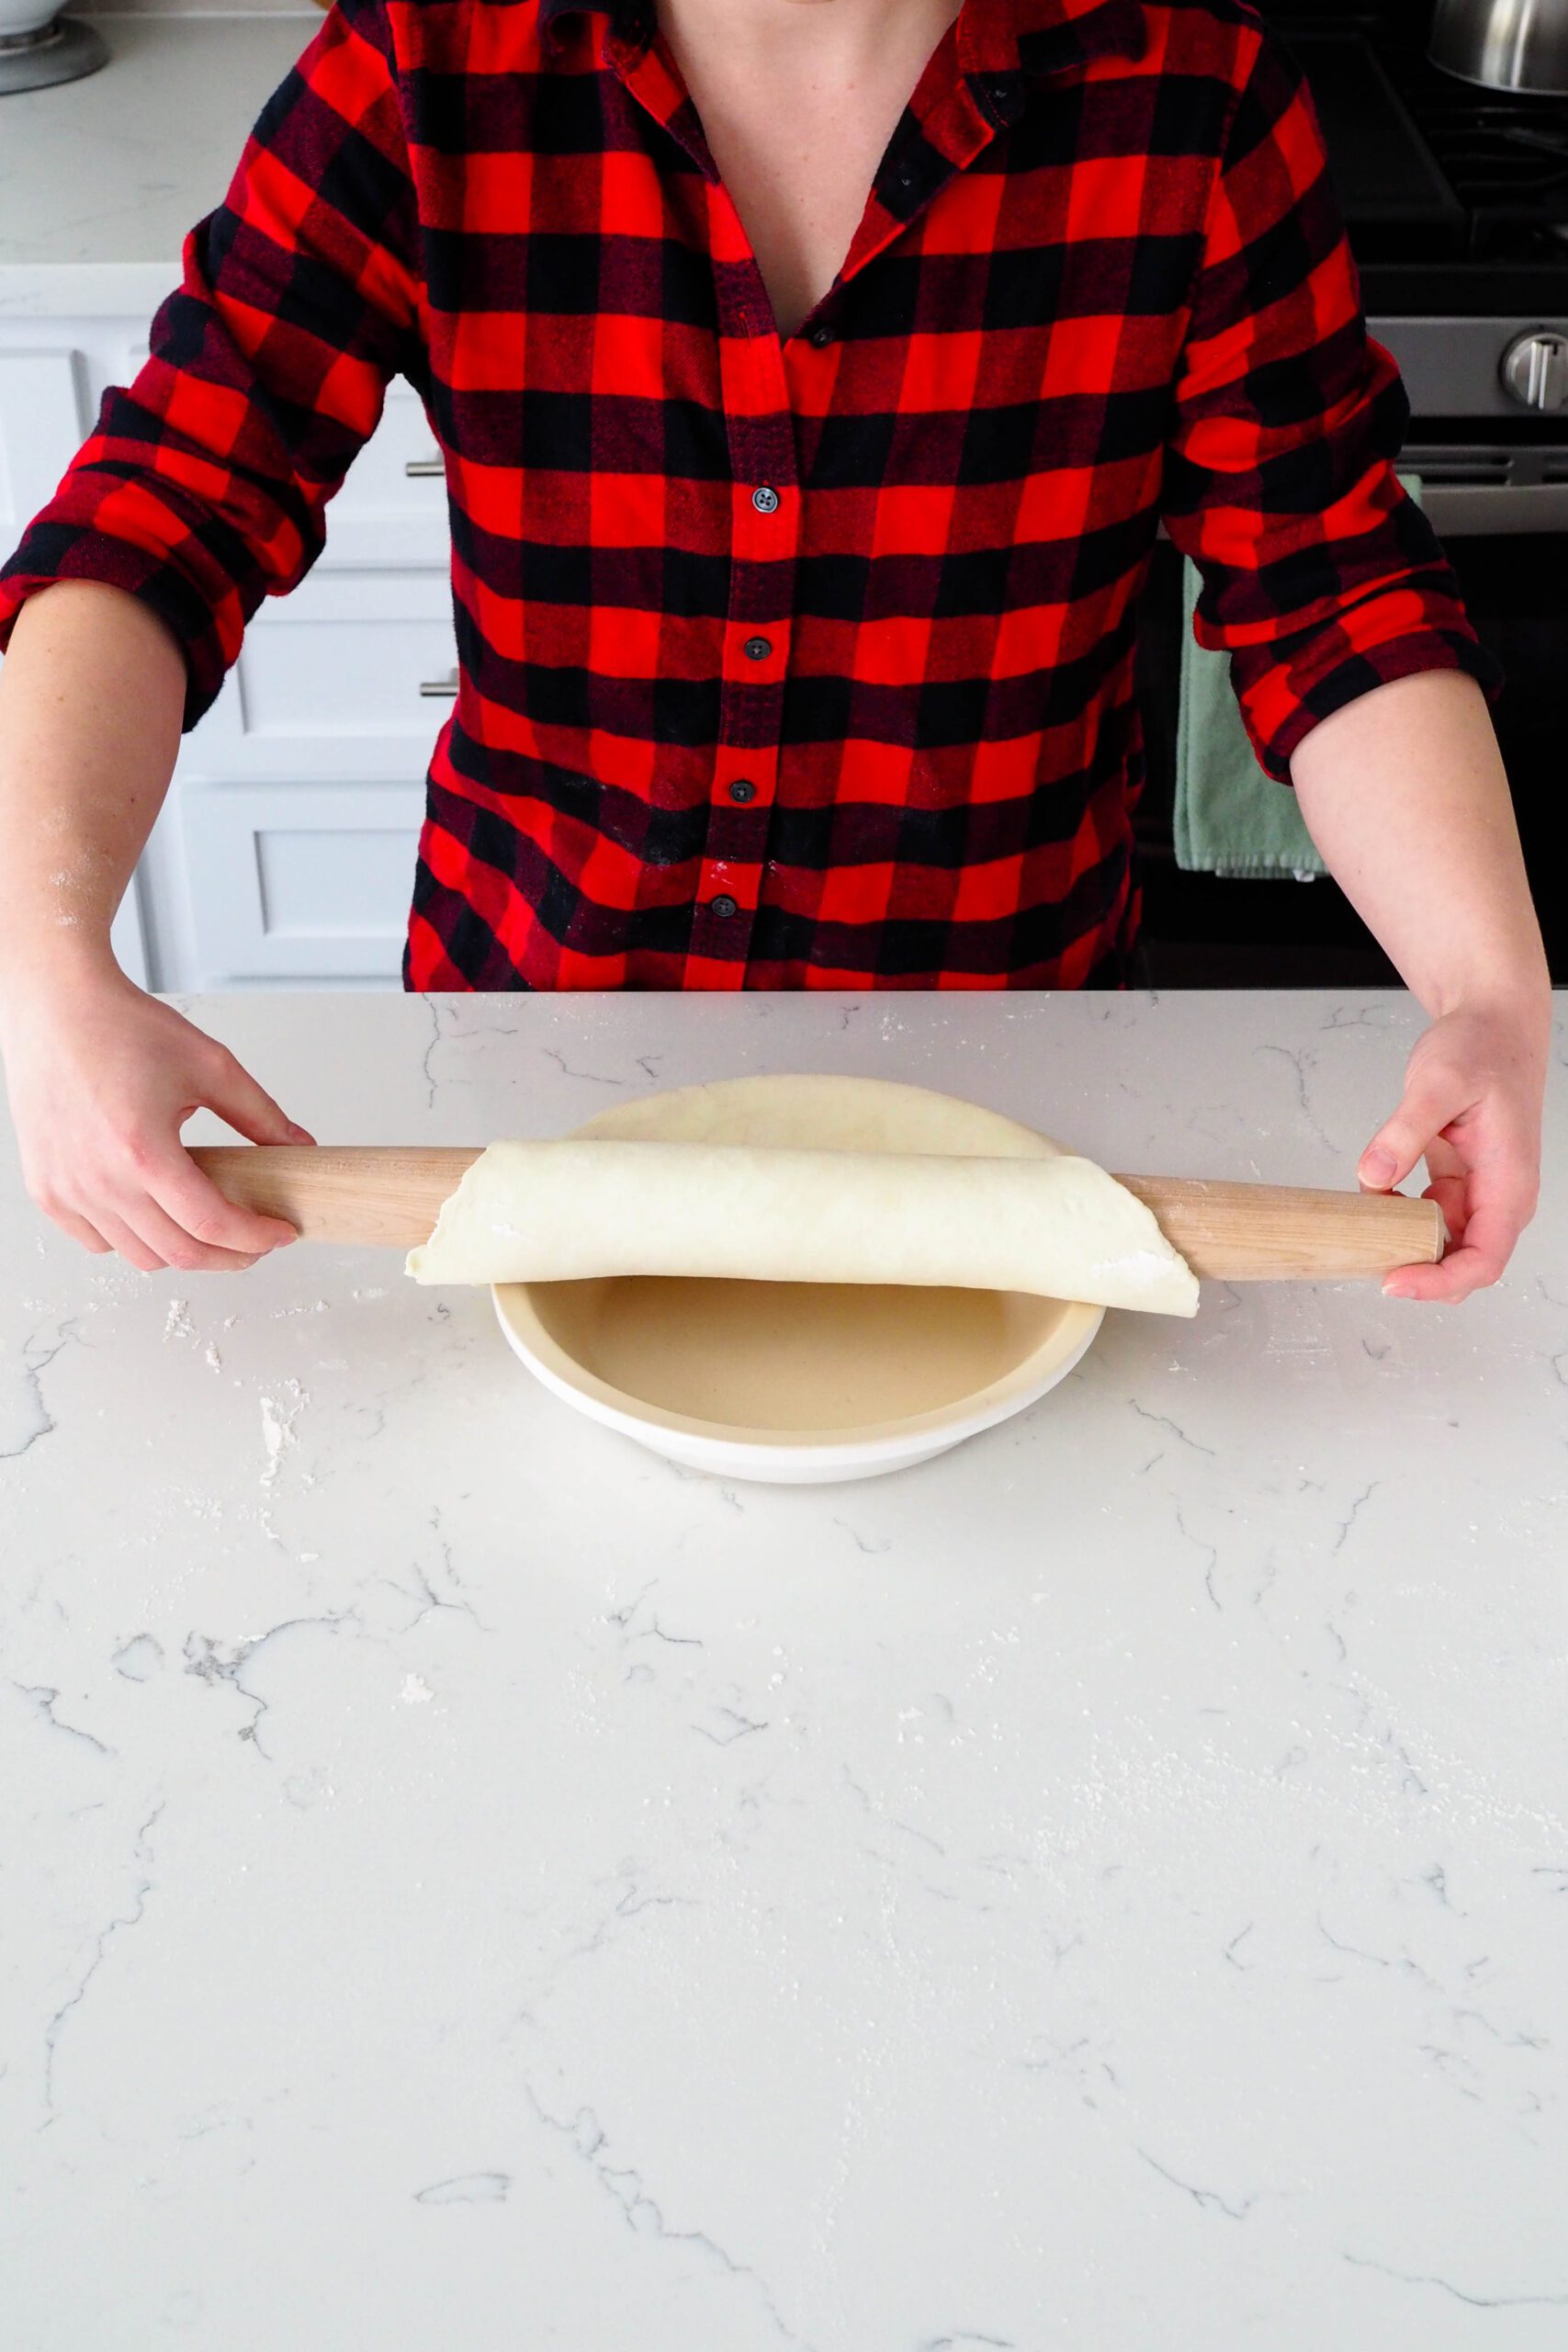 A woman unrolls pie dough into a pie pan.